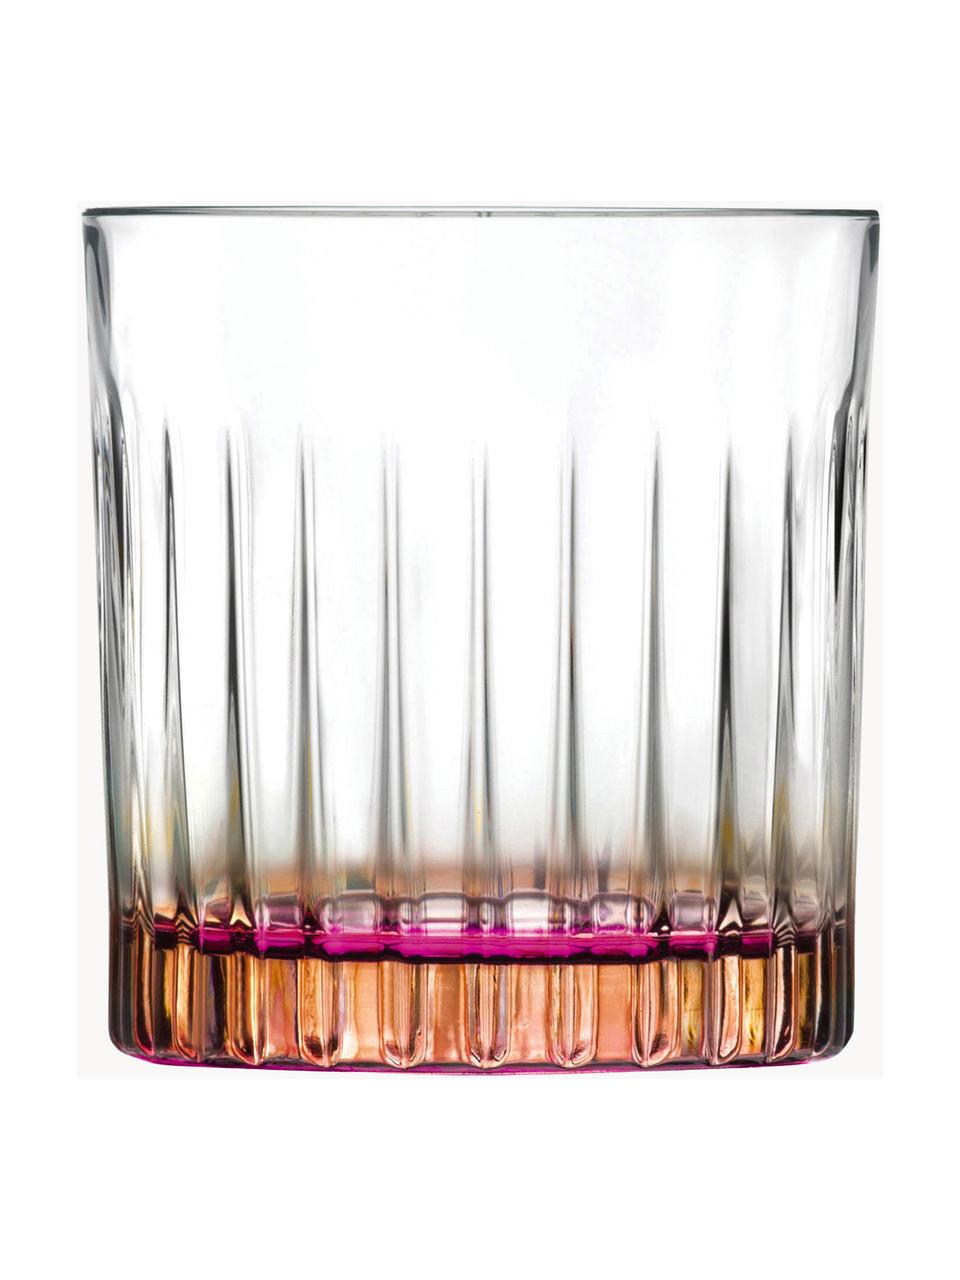 Glazen Gipsy met tweekleurig Luxion kristalglas, 6 stuks, Luxion-kristalglas, Transparant, roze, Ø 8 x H 9 cm, 360 ml